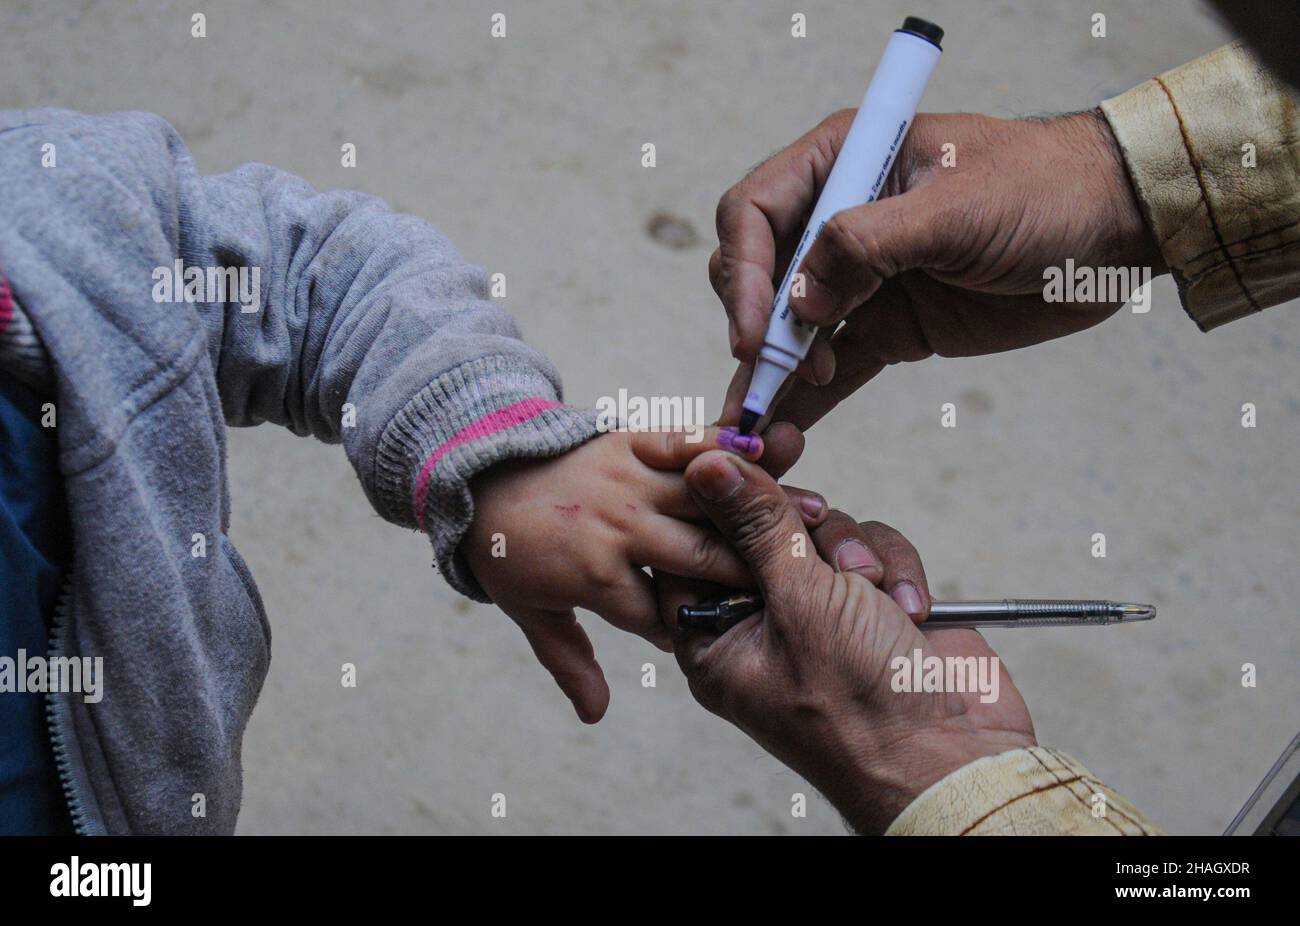 RAWALPINDI, Pakistan - décembre 13 : un agent de santé administre le vaccin contre la polio à un enfant lors d'une campagne anti-polio à Rawalpindi le 13 décembre 2021 Banque D'Images